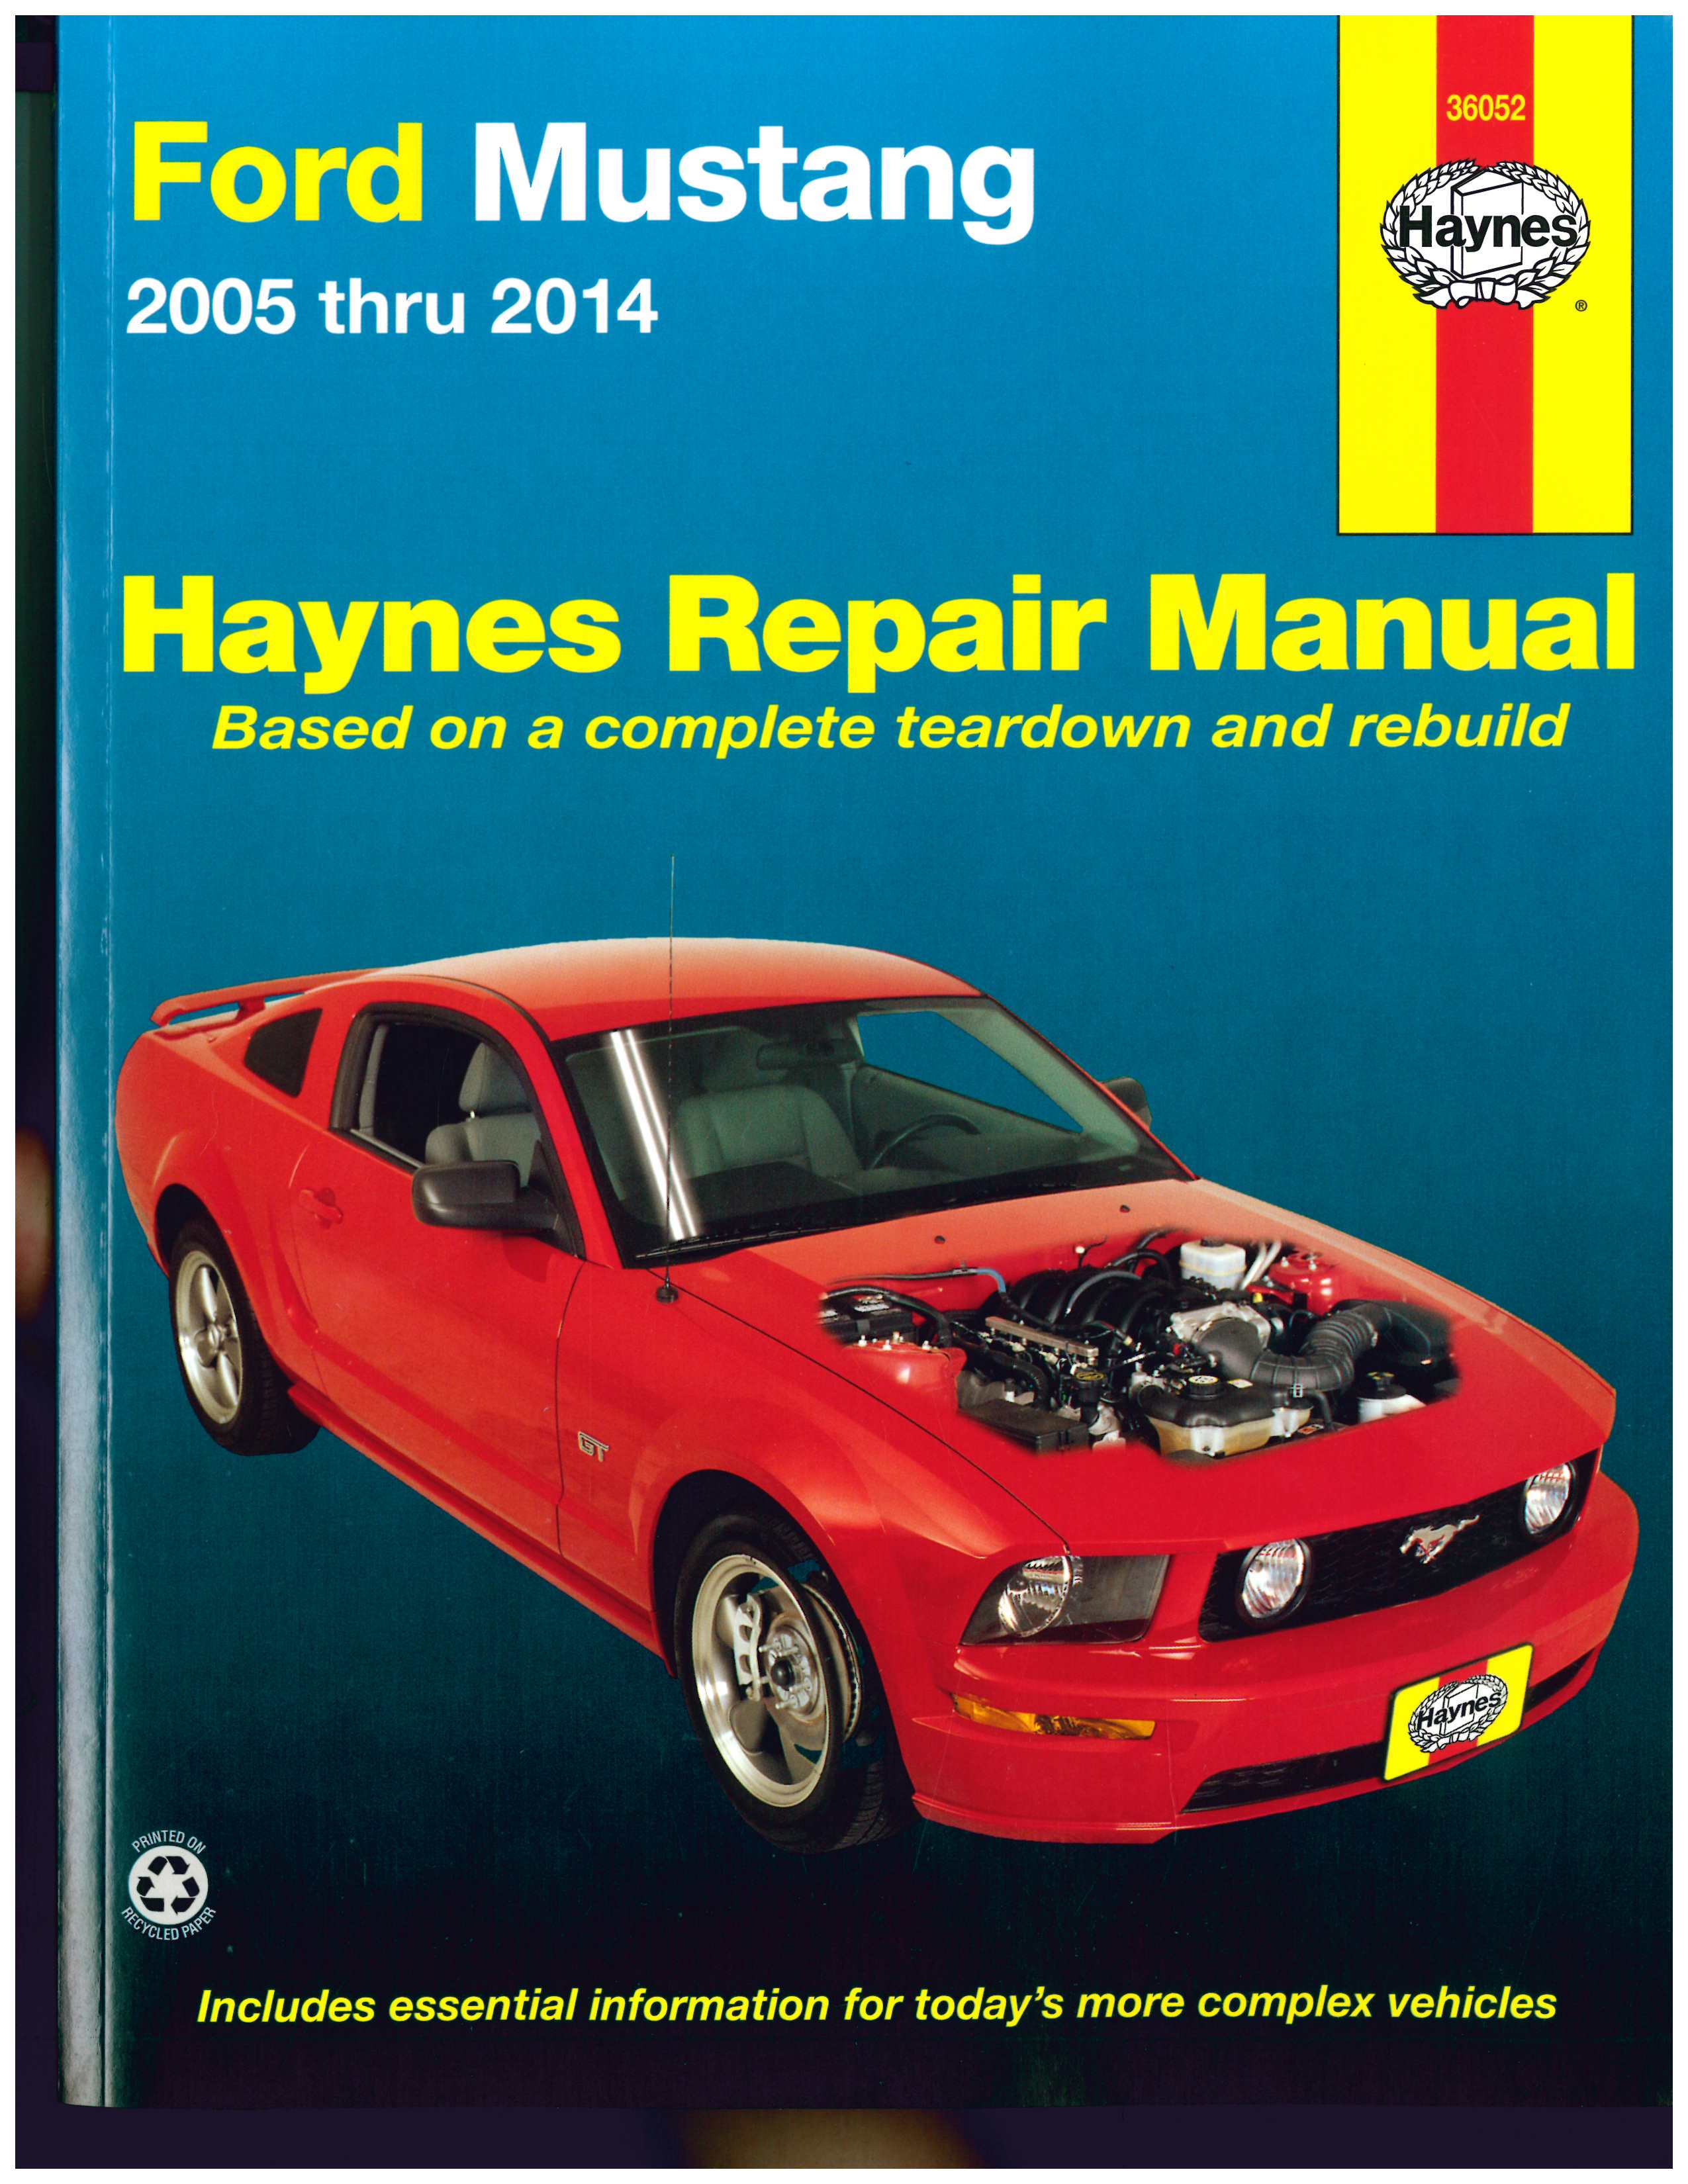 Ford Mustang 2005-2014 Haynes Automotive Repair Manual